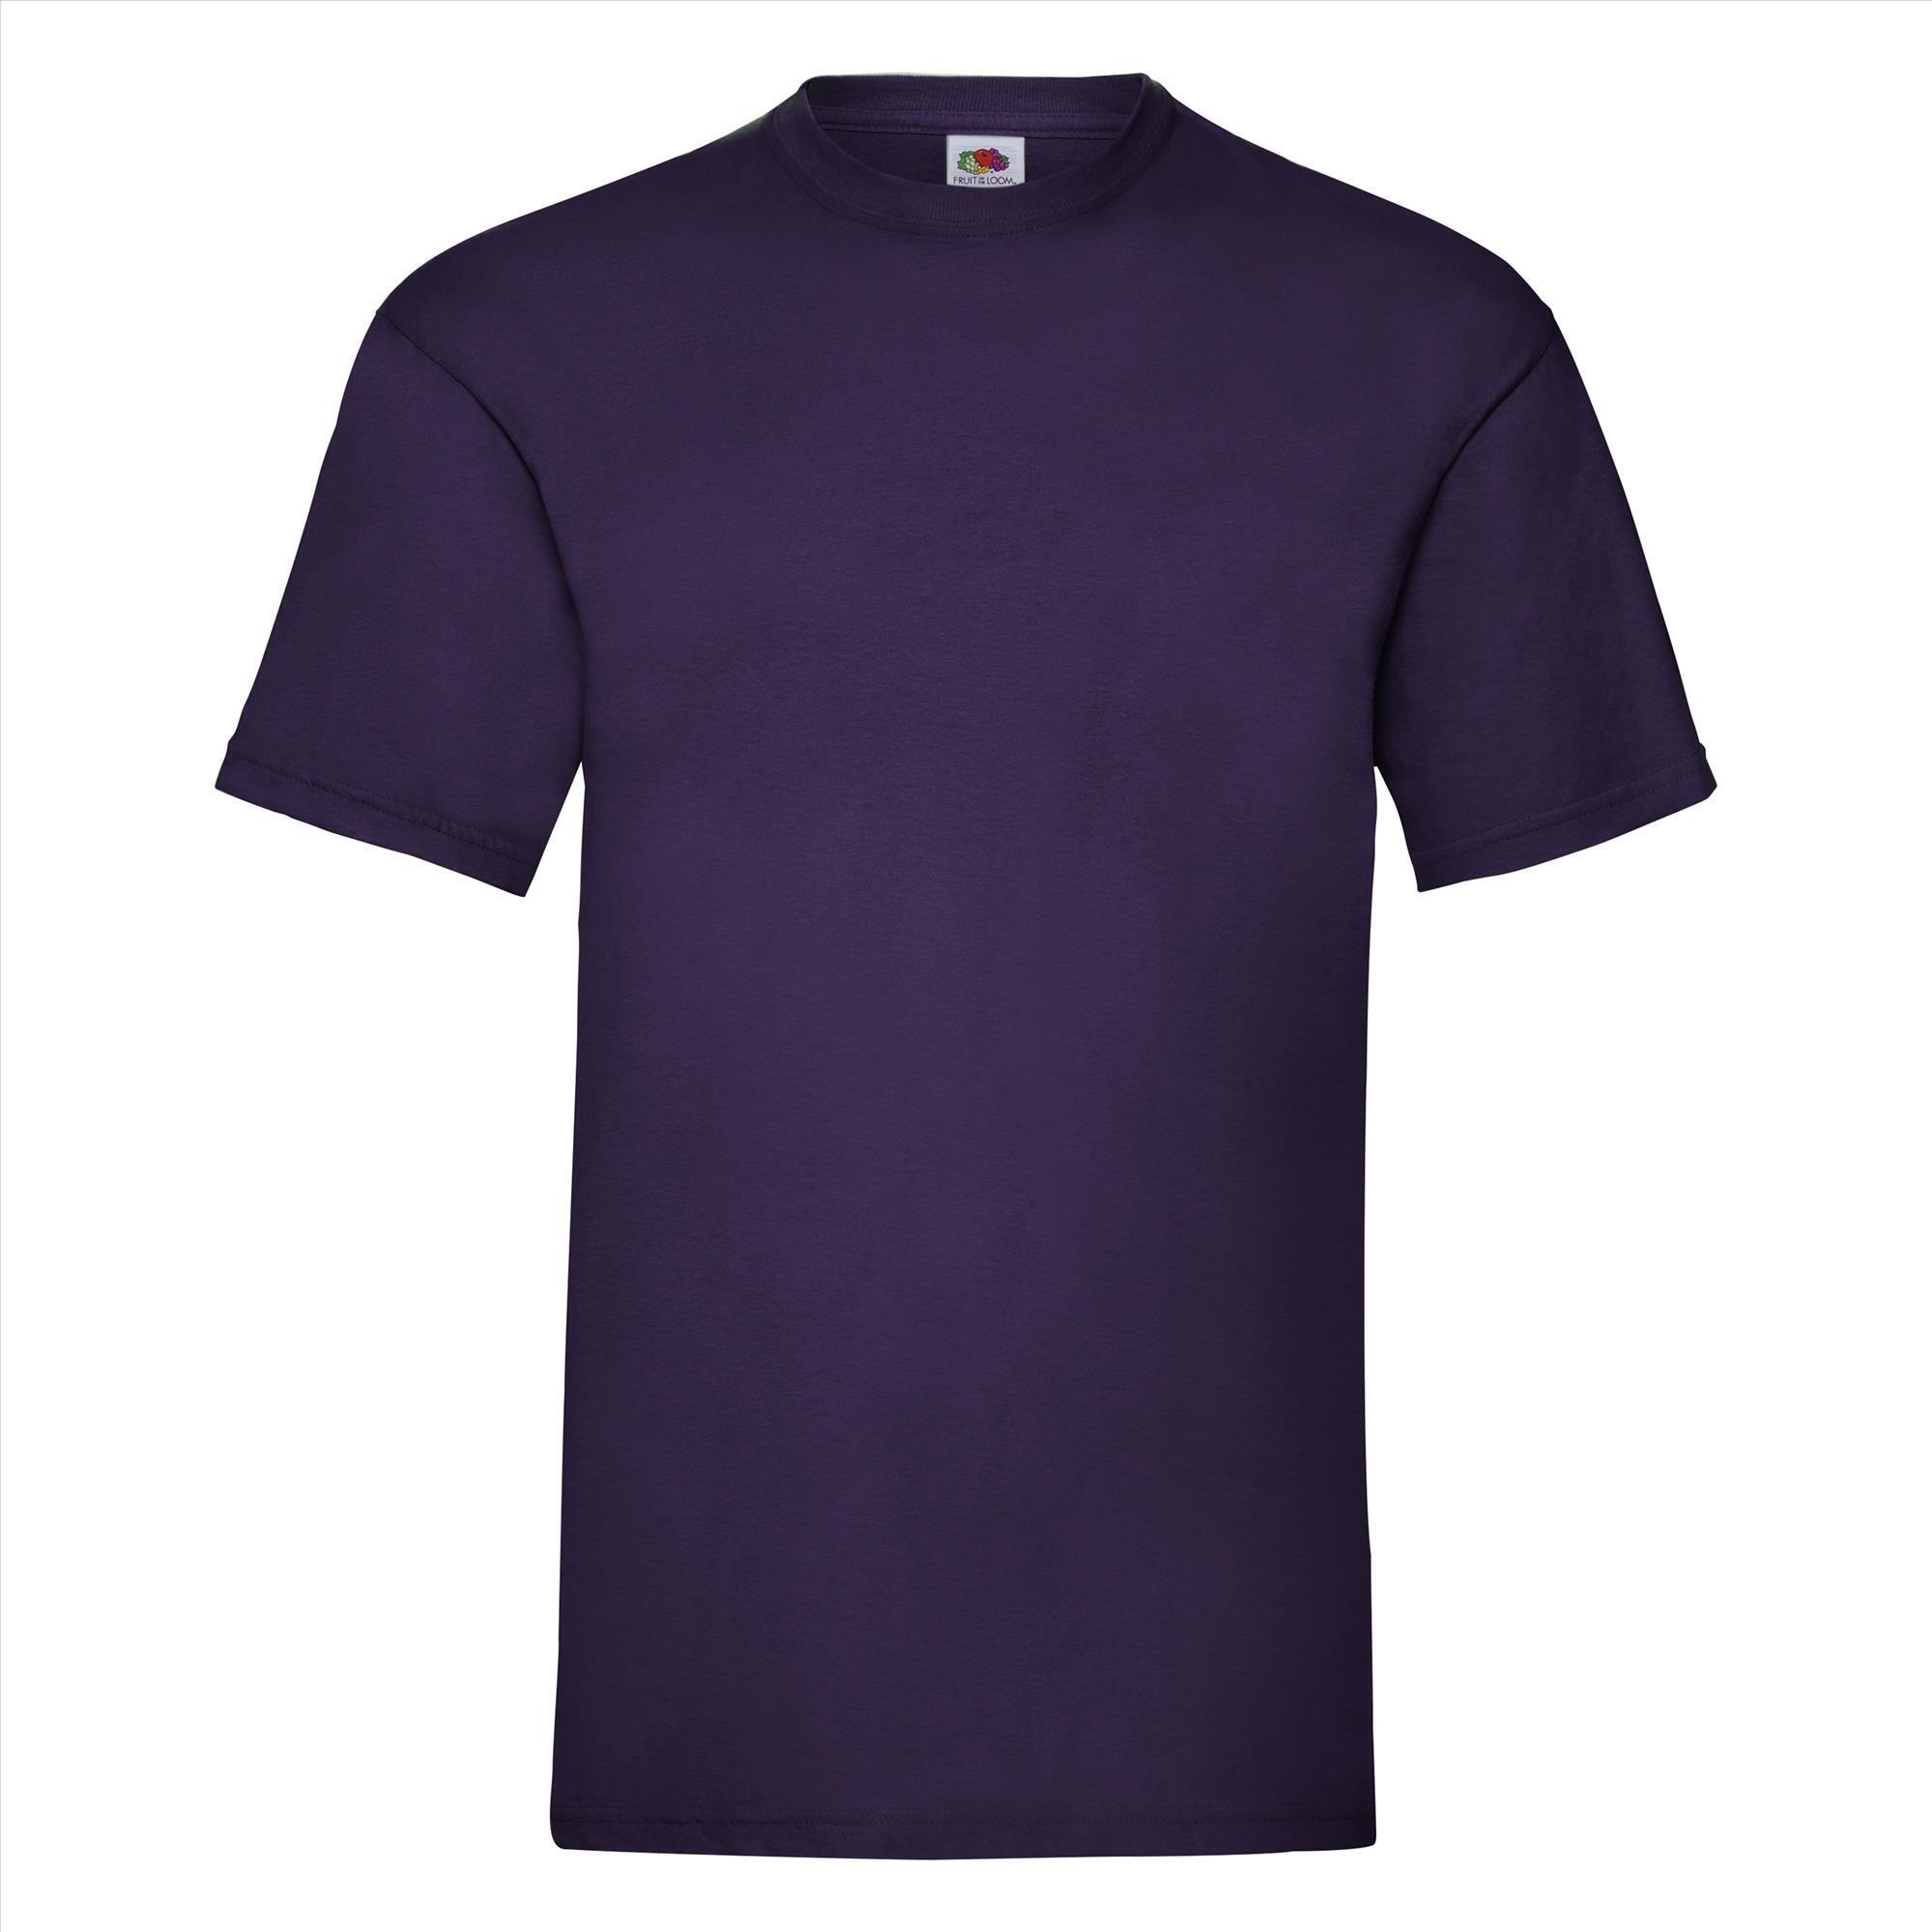 T-shirt voor mannen paars personaliseren T-shirt bedrukken